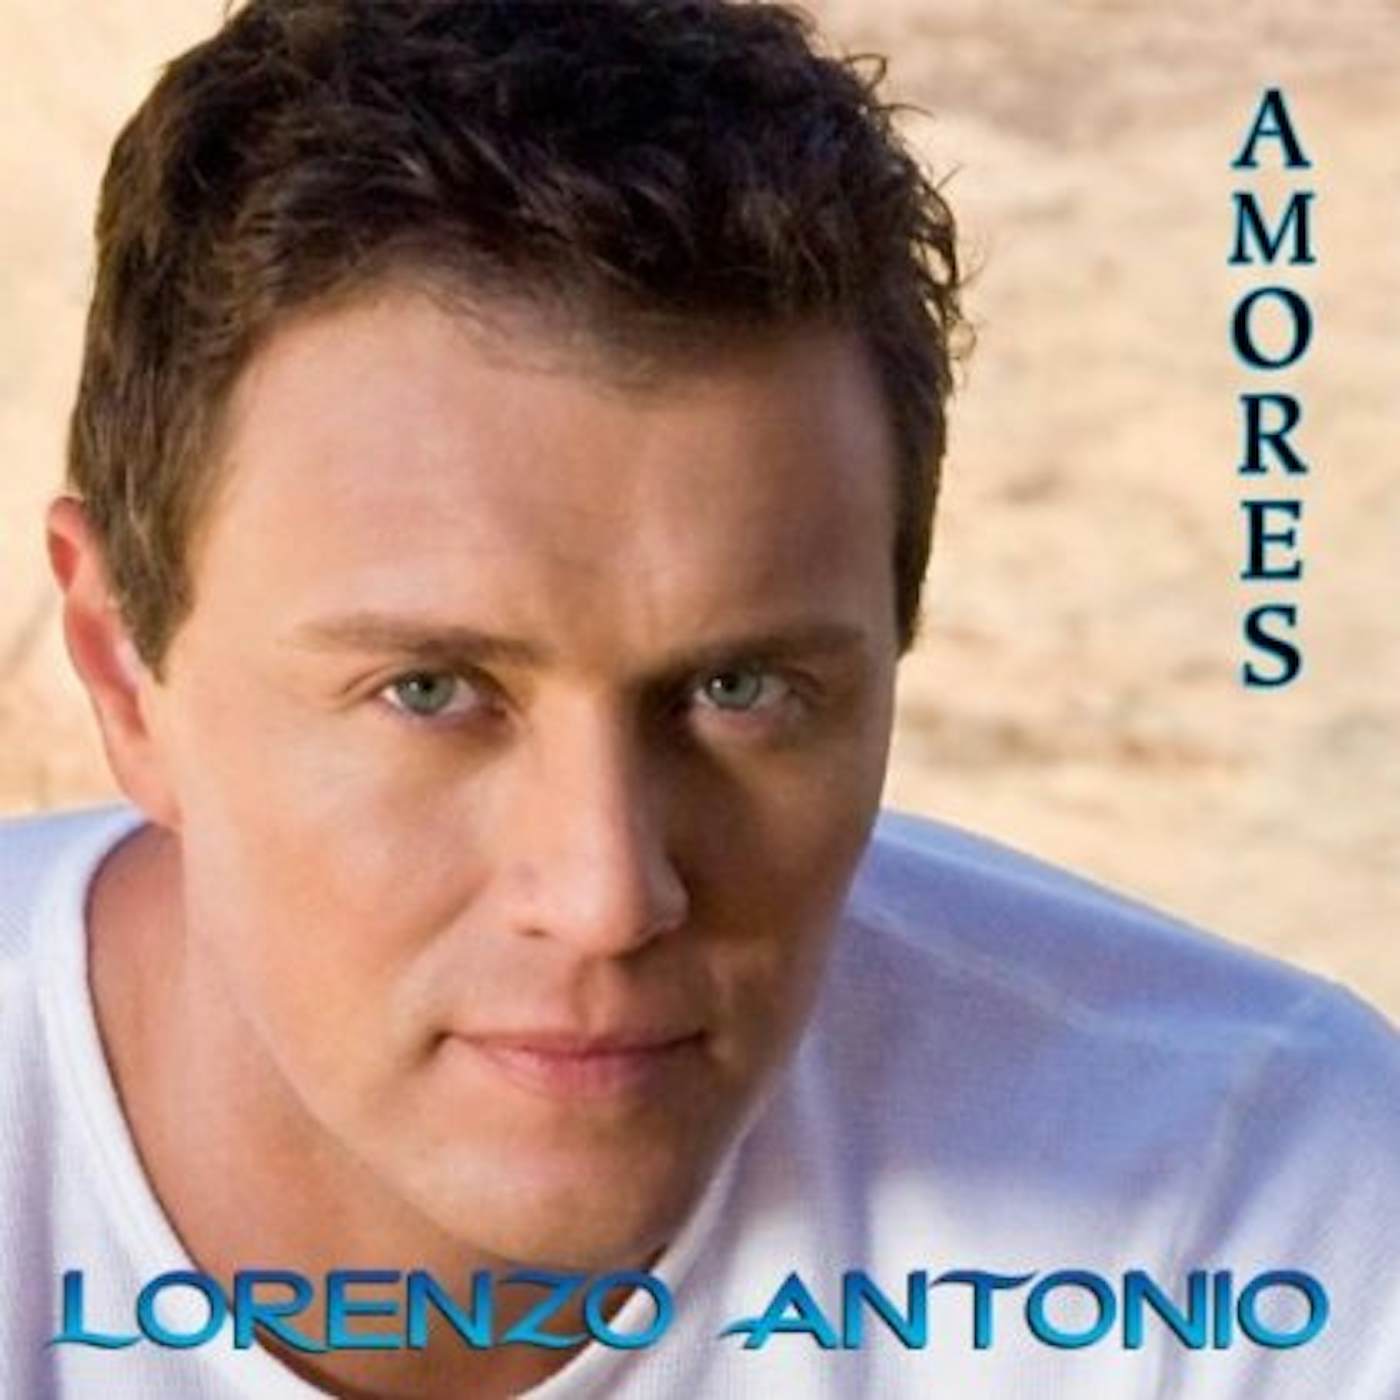 Lorenzo Antonio AMORES CD